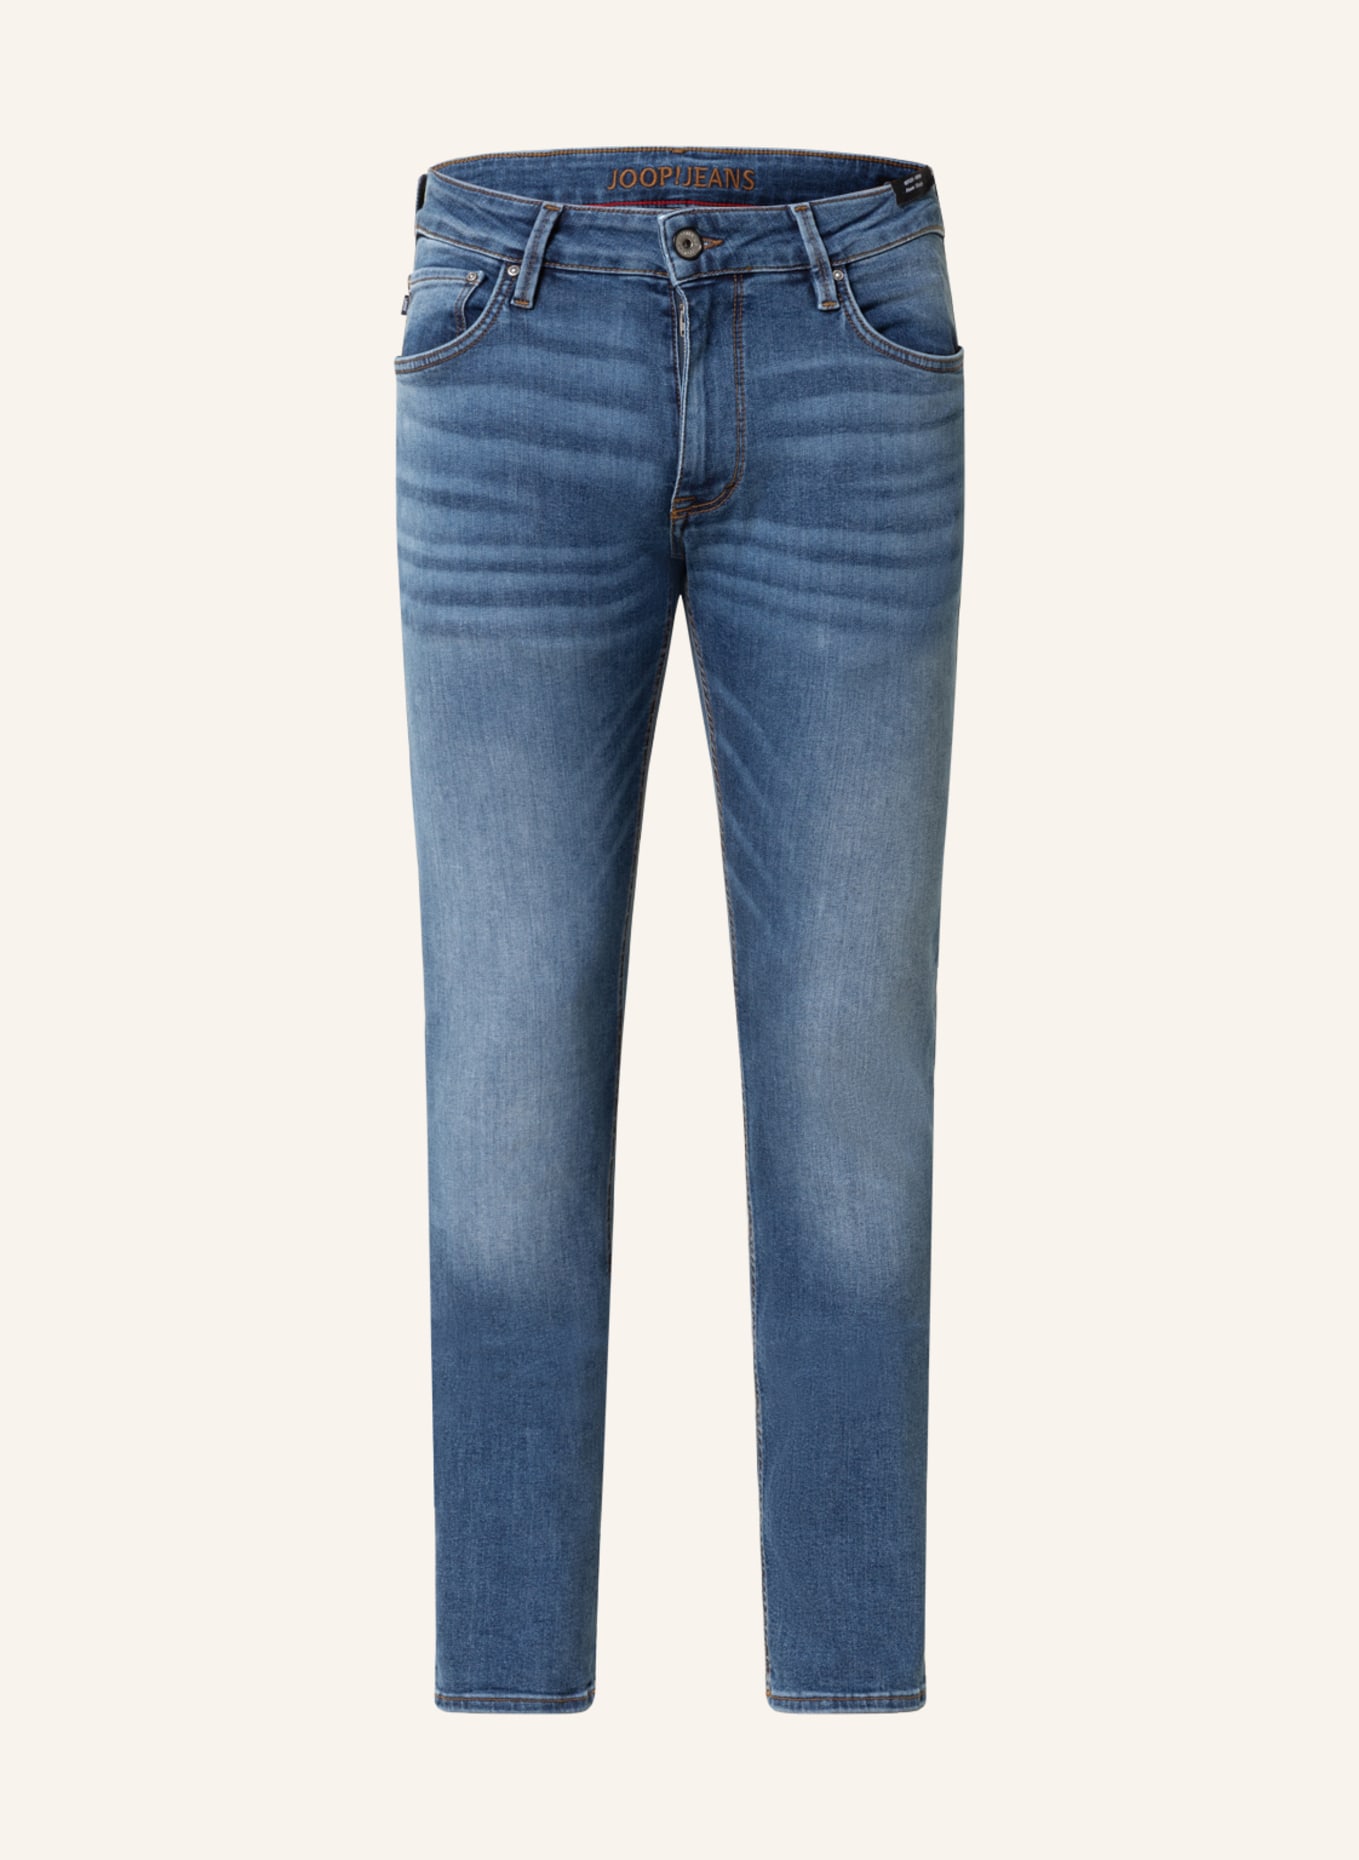 JOOP! JEANS Jeans STEPHEN slim fit, Color: 445 TurquoiseAqua              445 (Image 1)